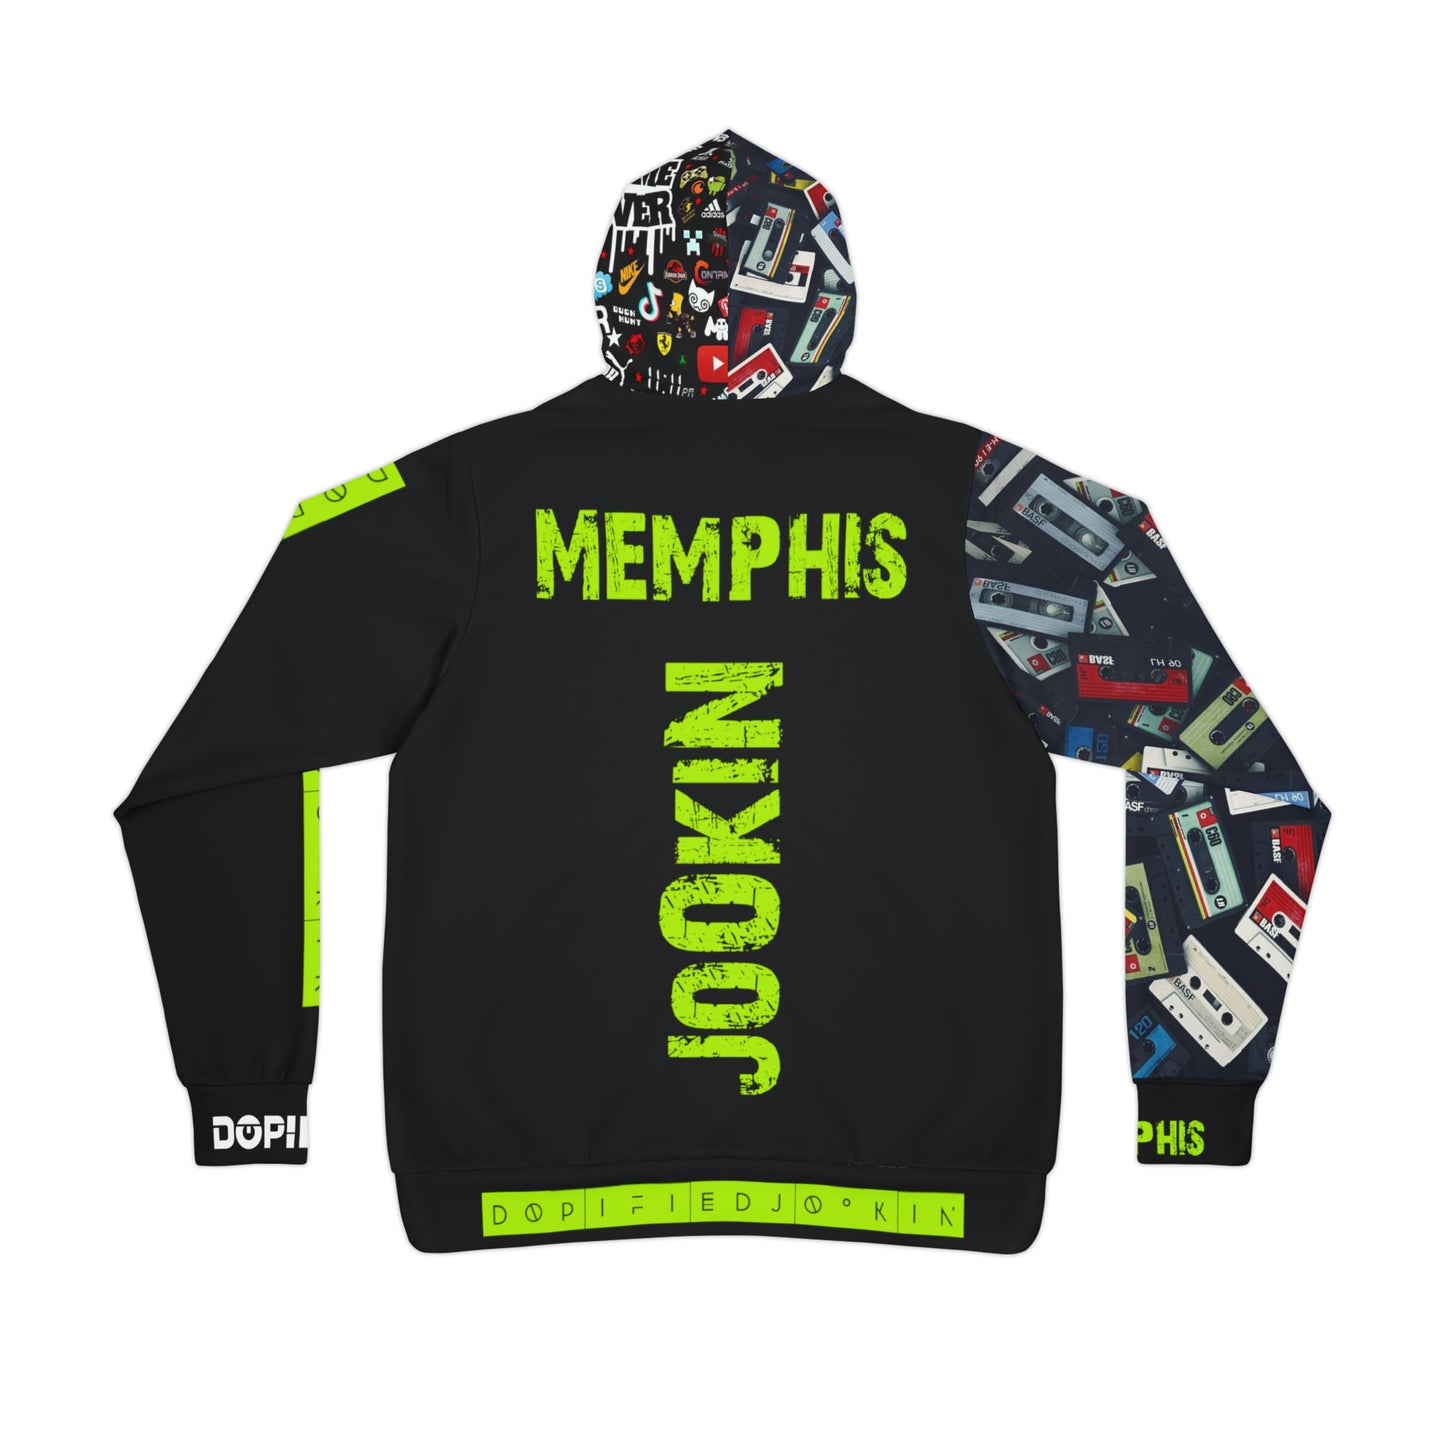 DOPiFiED “Memphis jookin Exclusive Runtz Green Mode” Athletic Hoodie